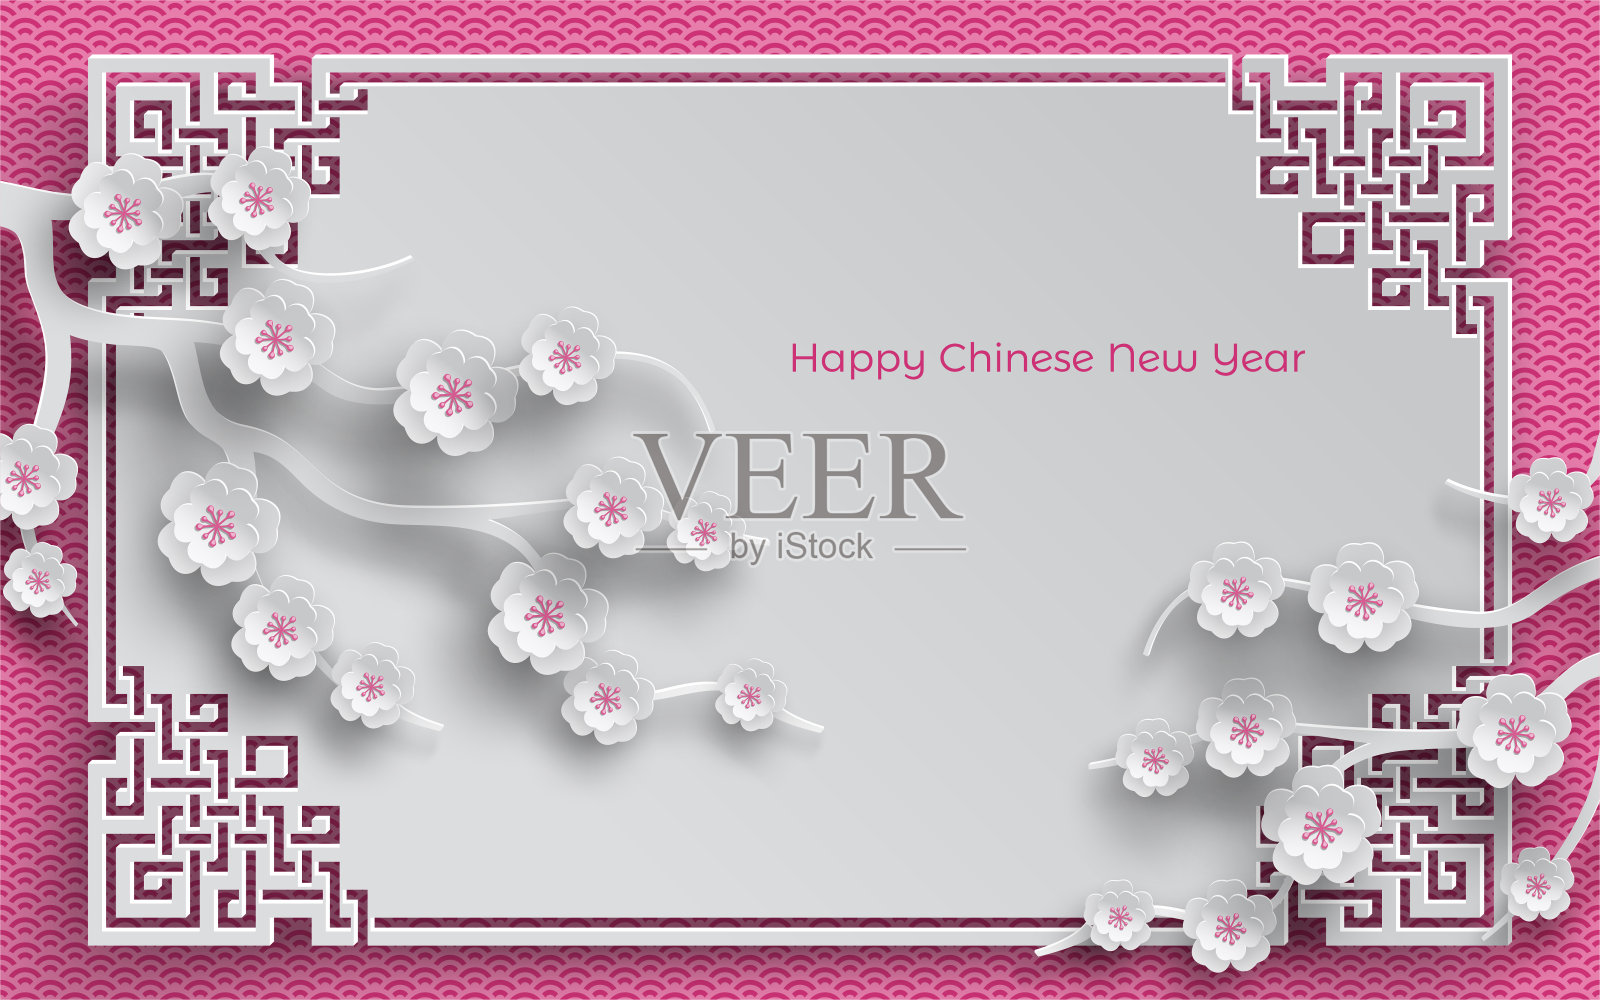 樱花枝，东方框架上的粉红色图案背景为中国新年贺卡，剪纸风格。矢量，说明中国新年背景图片素材